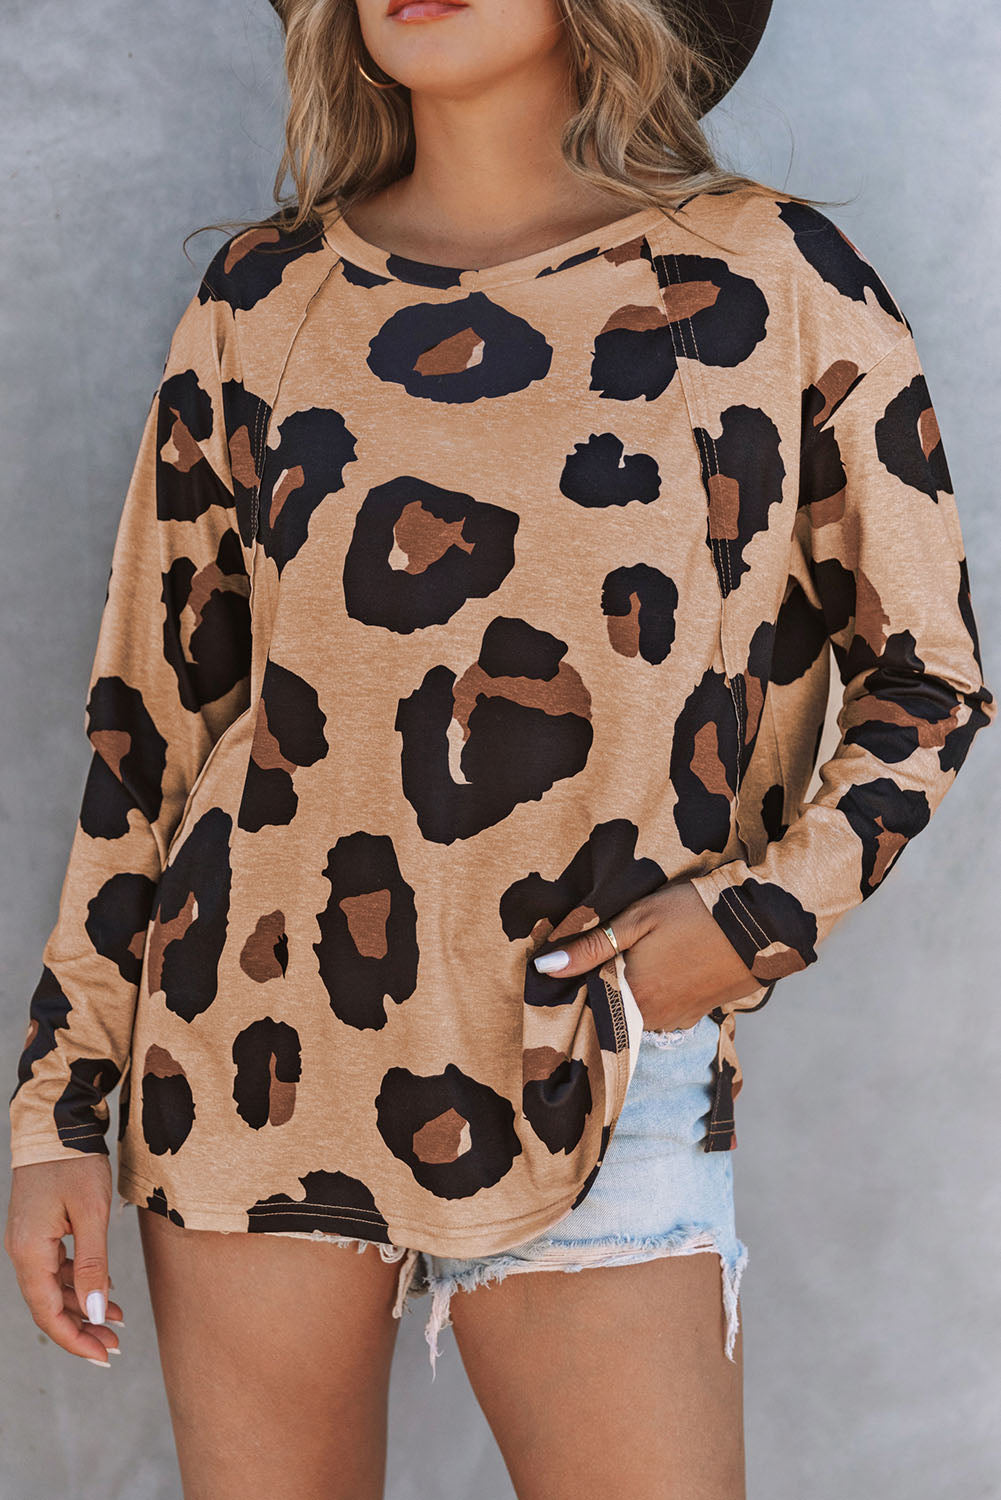 Siva ohlapna majica z dolgimi rokavi z leopardjim vzorcem